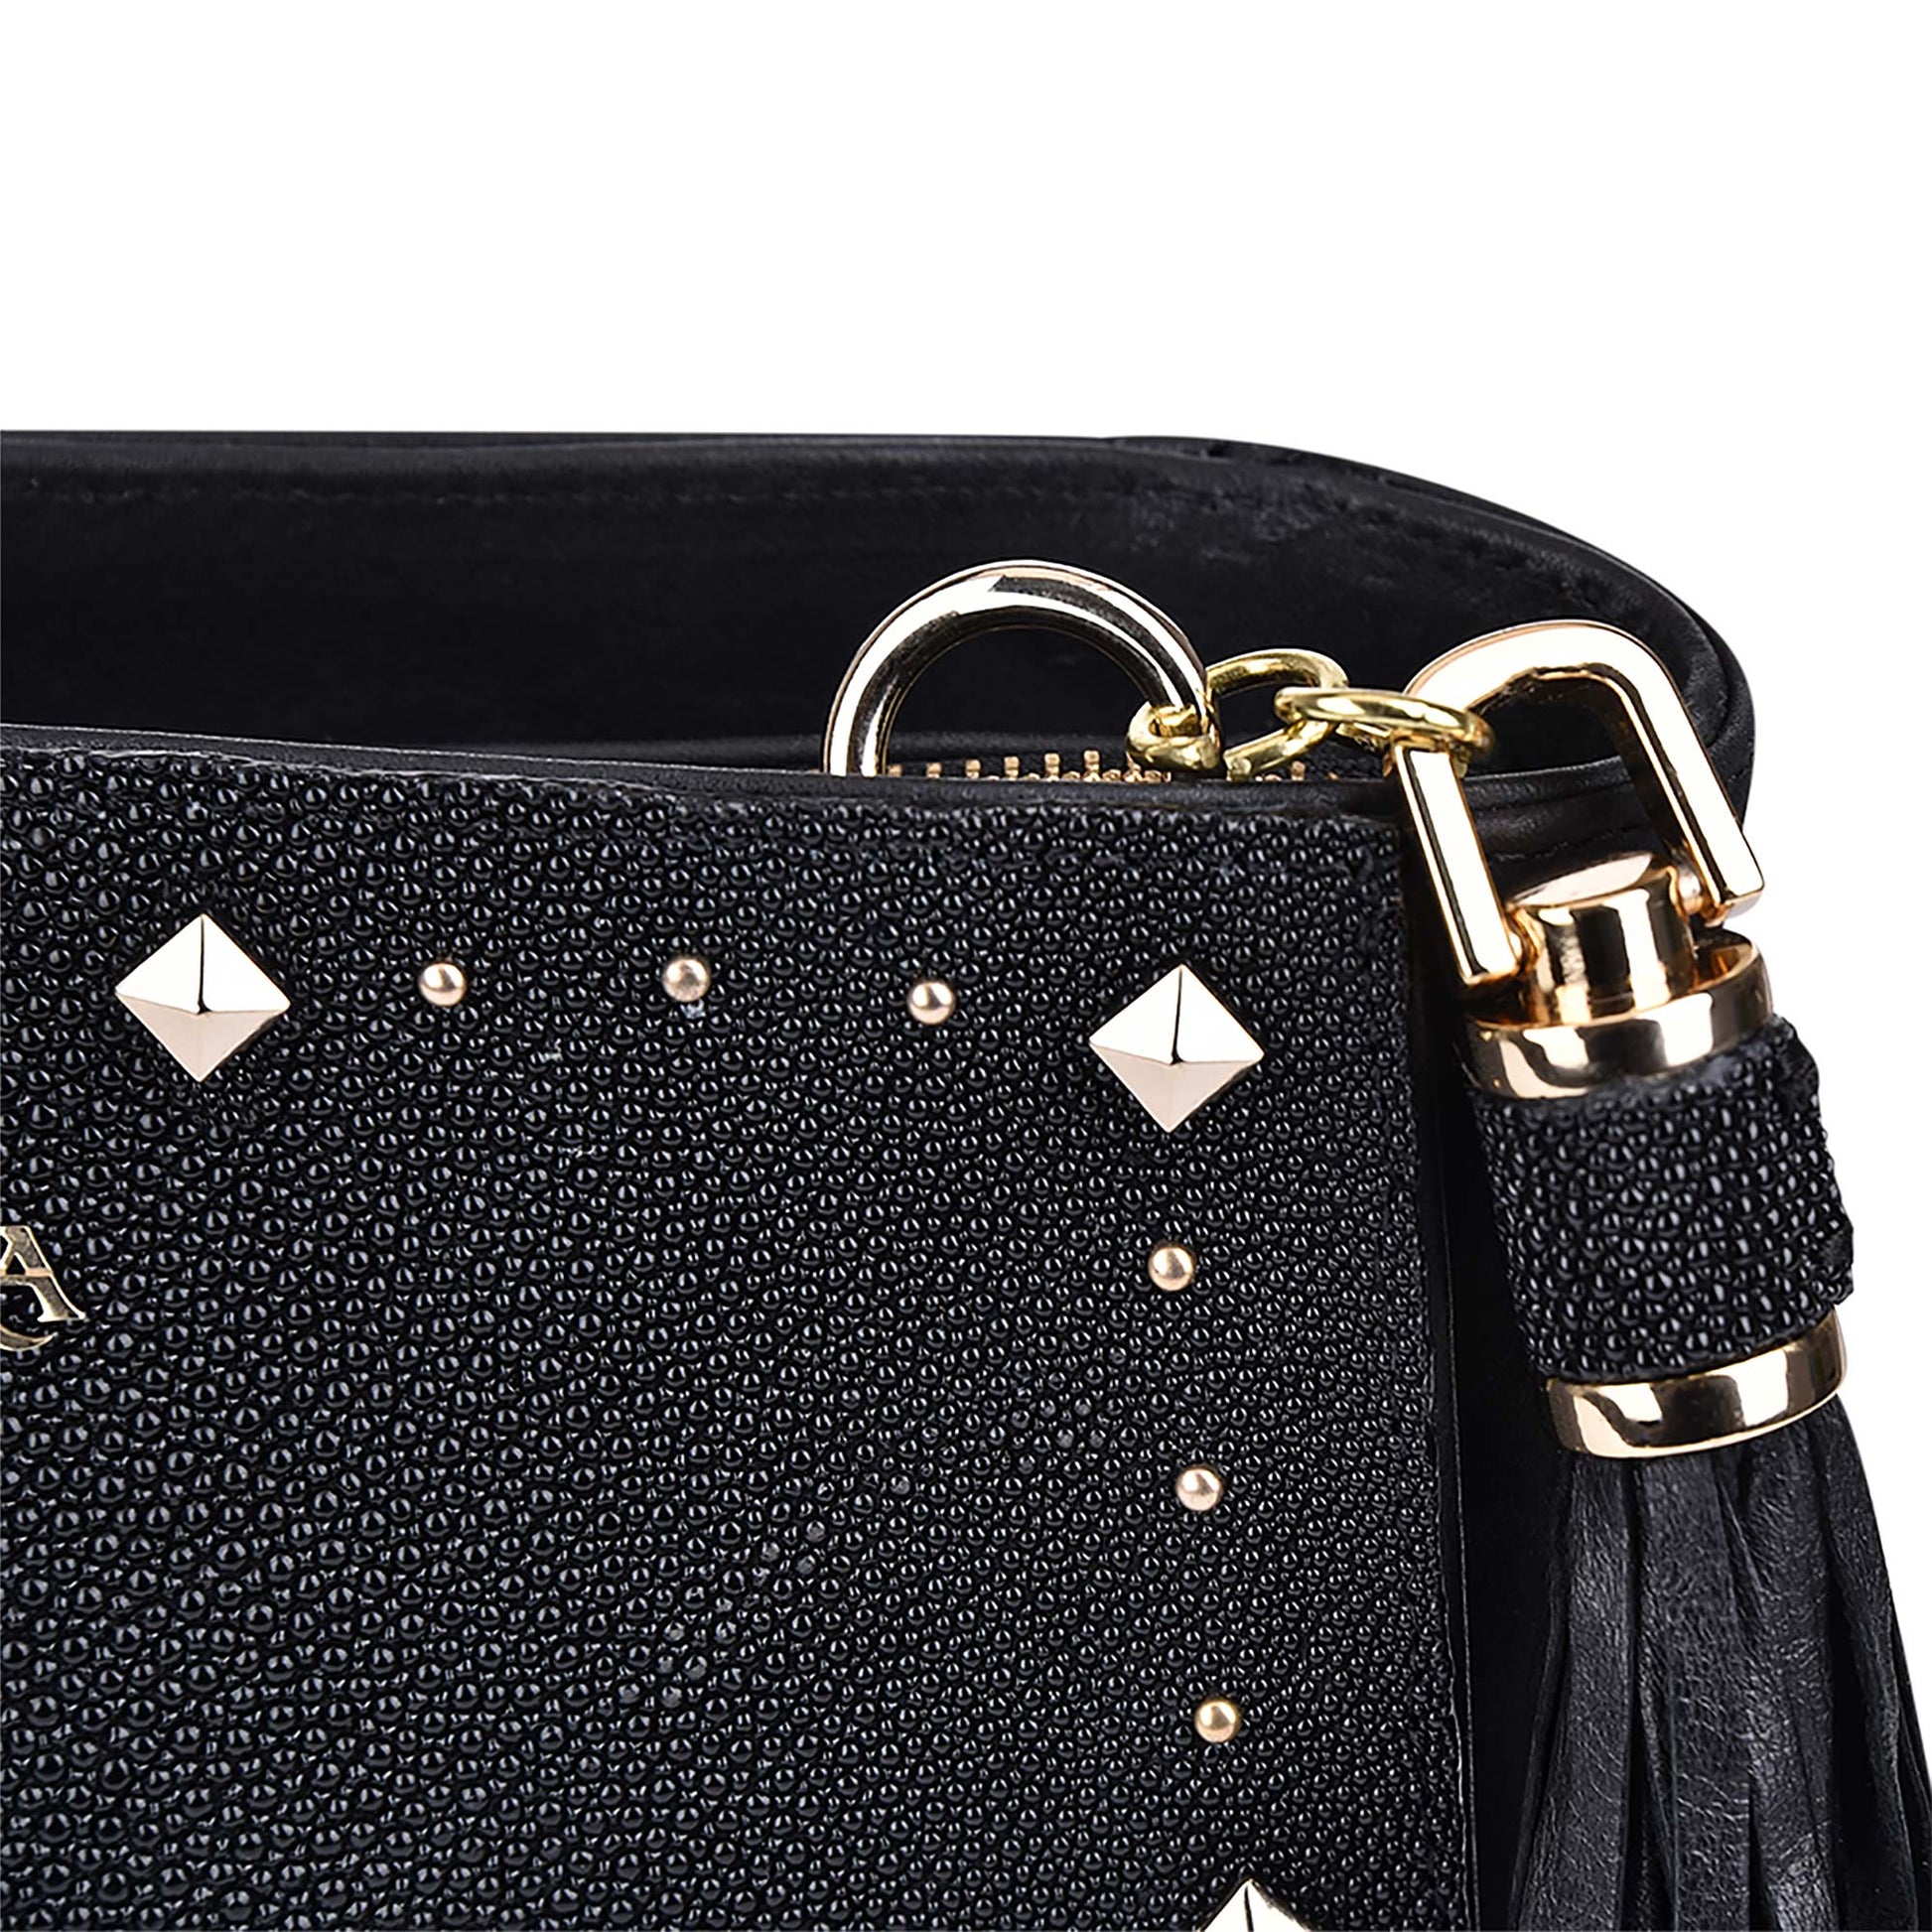 The hanging ovine leather tassel elegantly complements the bag's design.